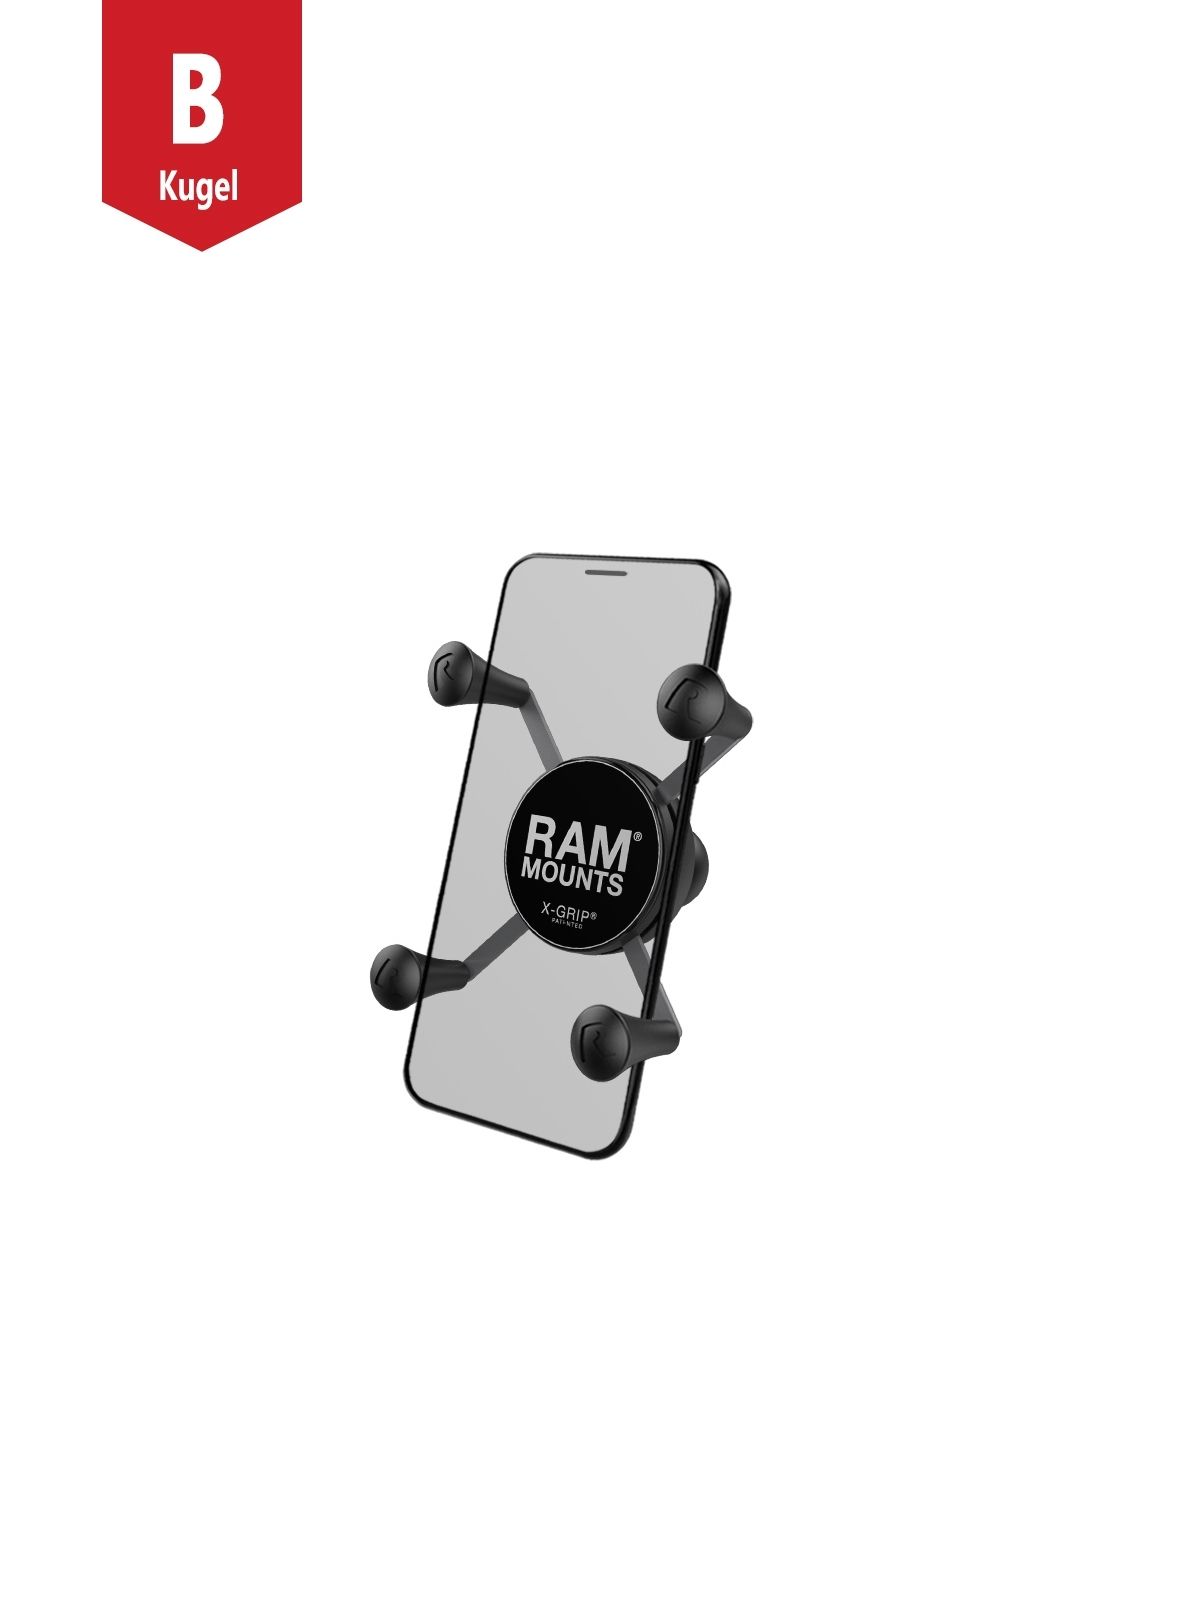 RAM Mounts X-Grip-Halteklammer für Smartphones klein bis 82,6 mm Breite - B-Kugel 